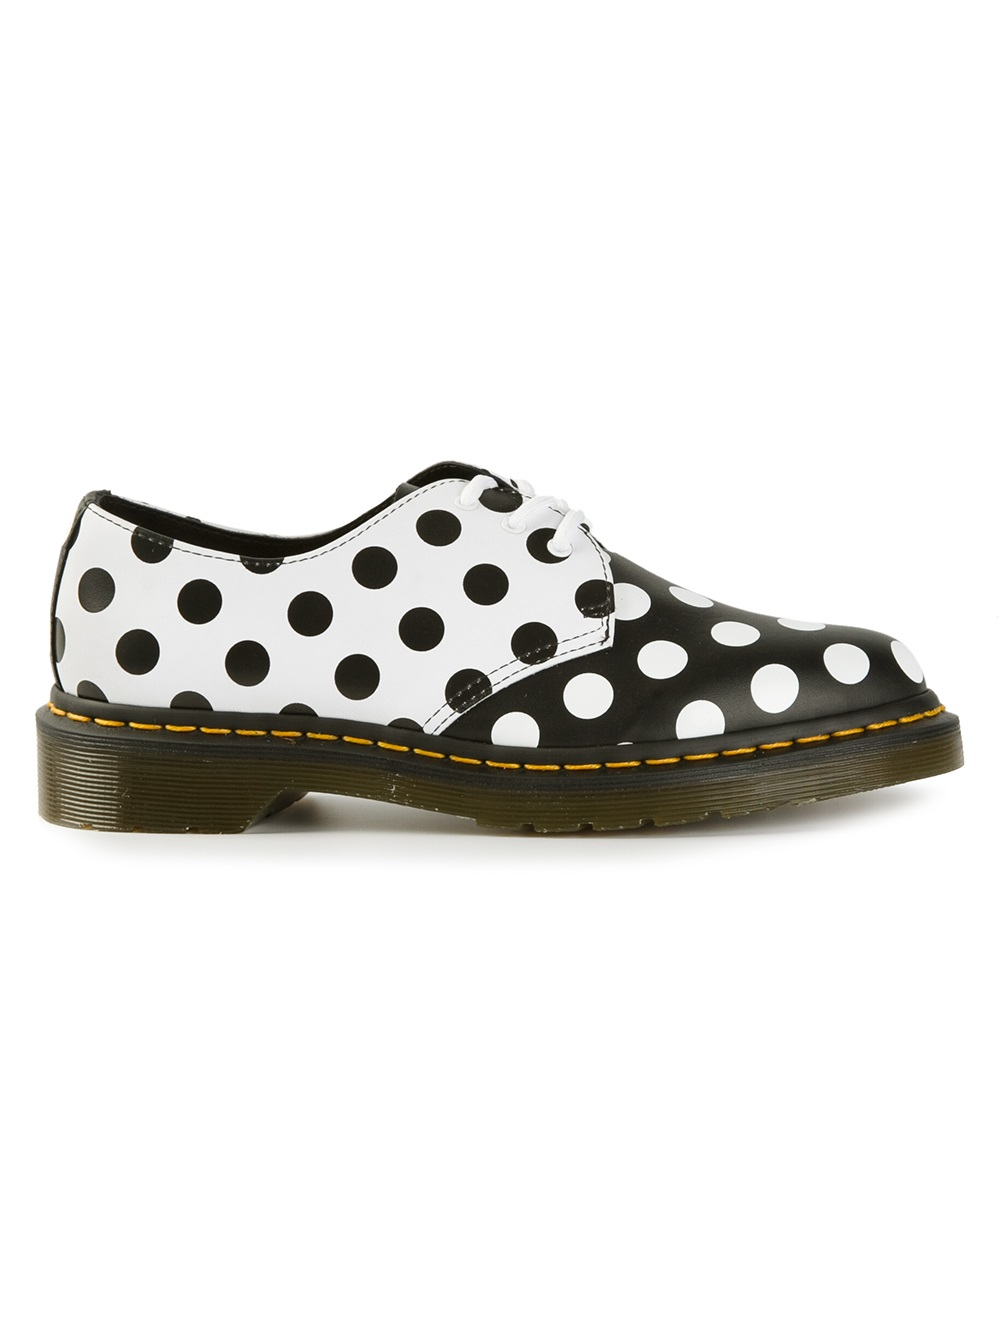 Dr. Martens Meris Polka Dot Shoes in White (Black) | Lyst